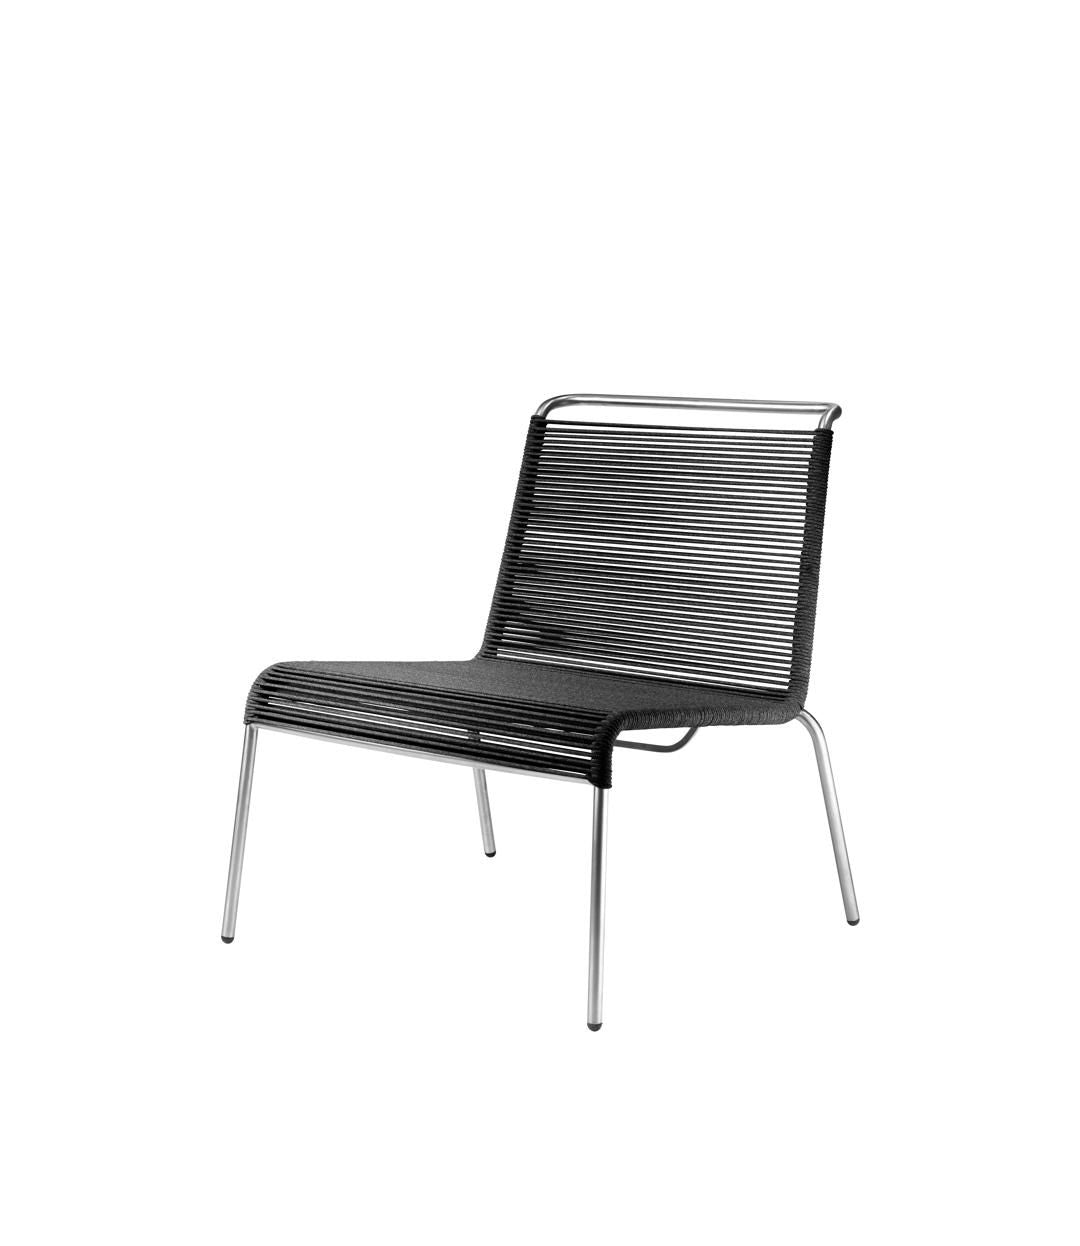 Fdb Møbler M20 L Teglgård Cord Lounge Chair, Black